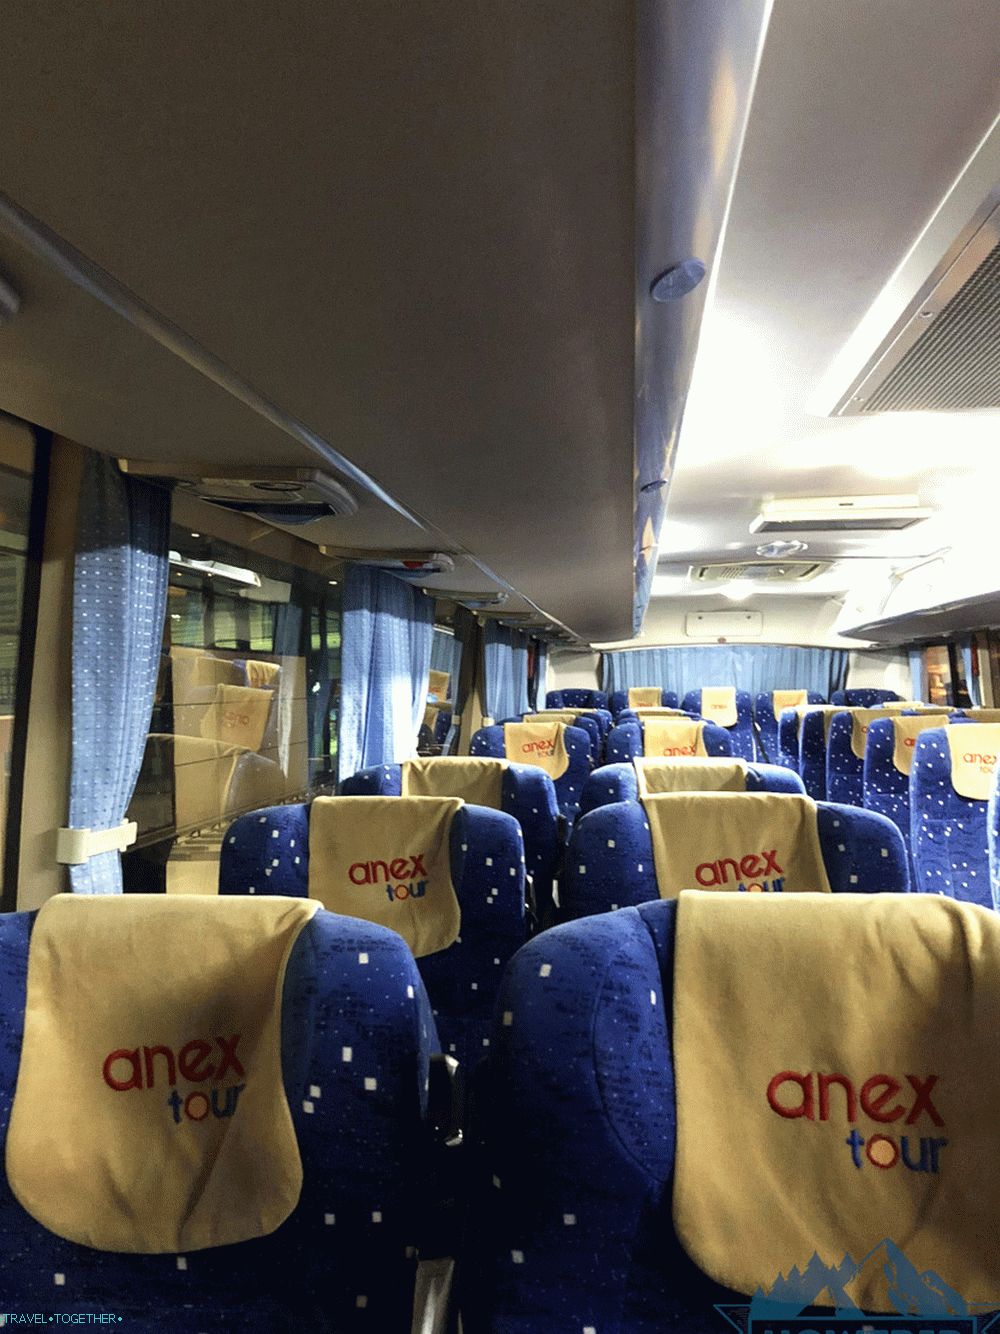 Bus Aneks tour